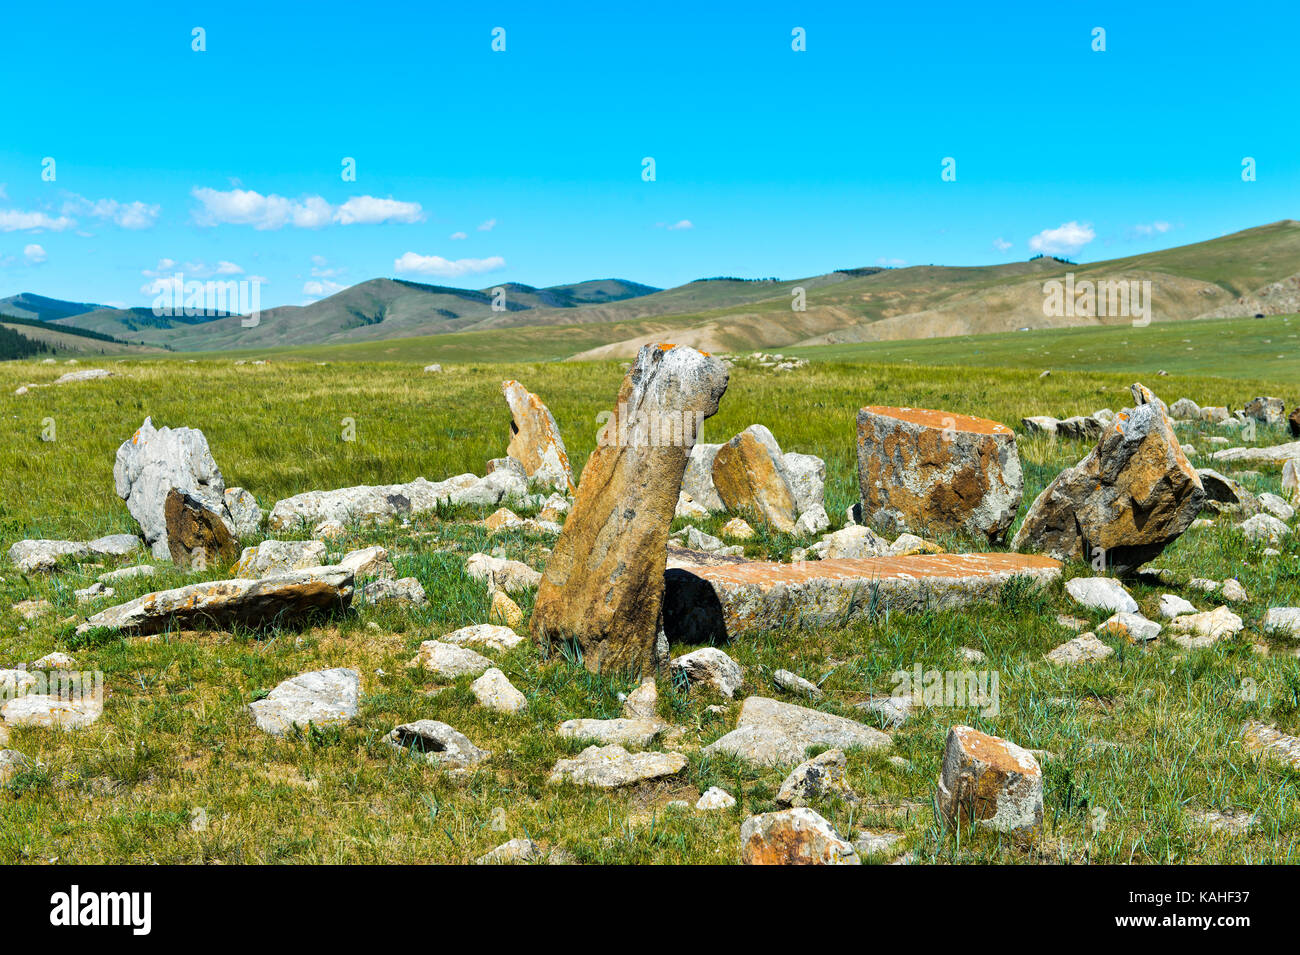 Sépulture antique avec les enterrements de pierres de la fin de l'âge du bronze, khangai nuruuu oevoerkhangai, parc national, la Mongolie aimag Banque D'Images